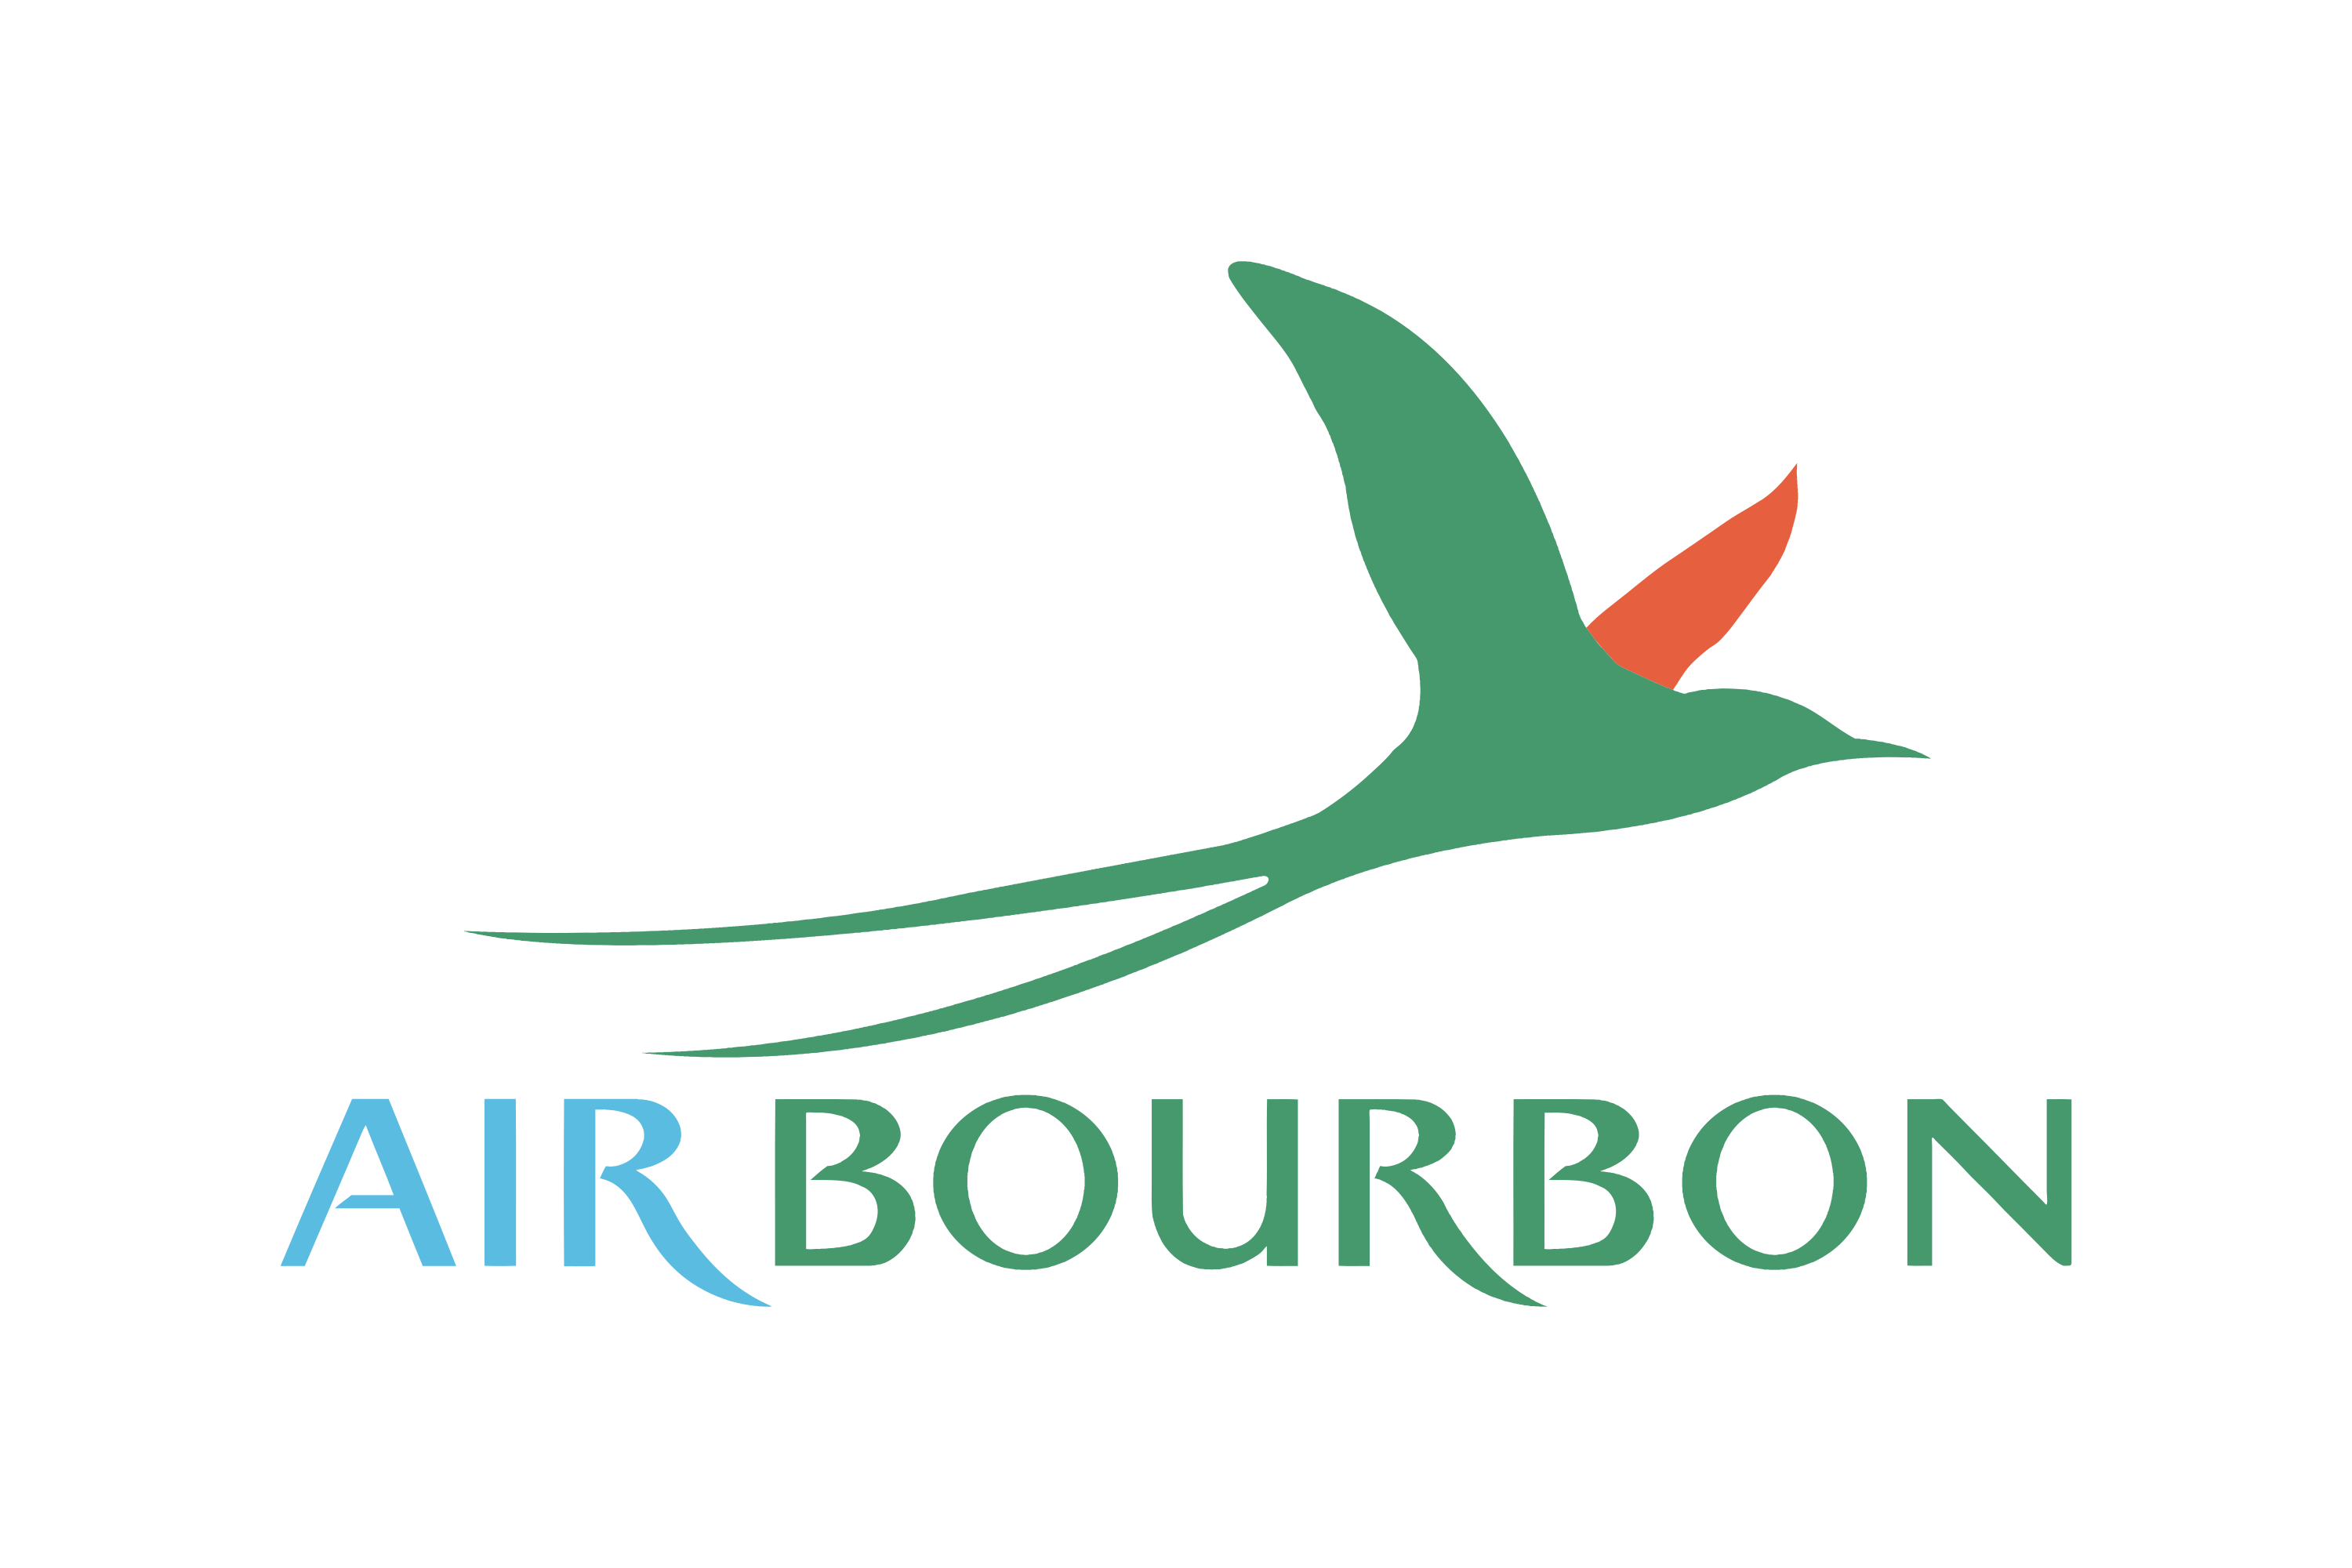 Air Bourbon Logo